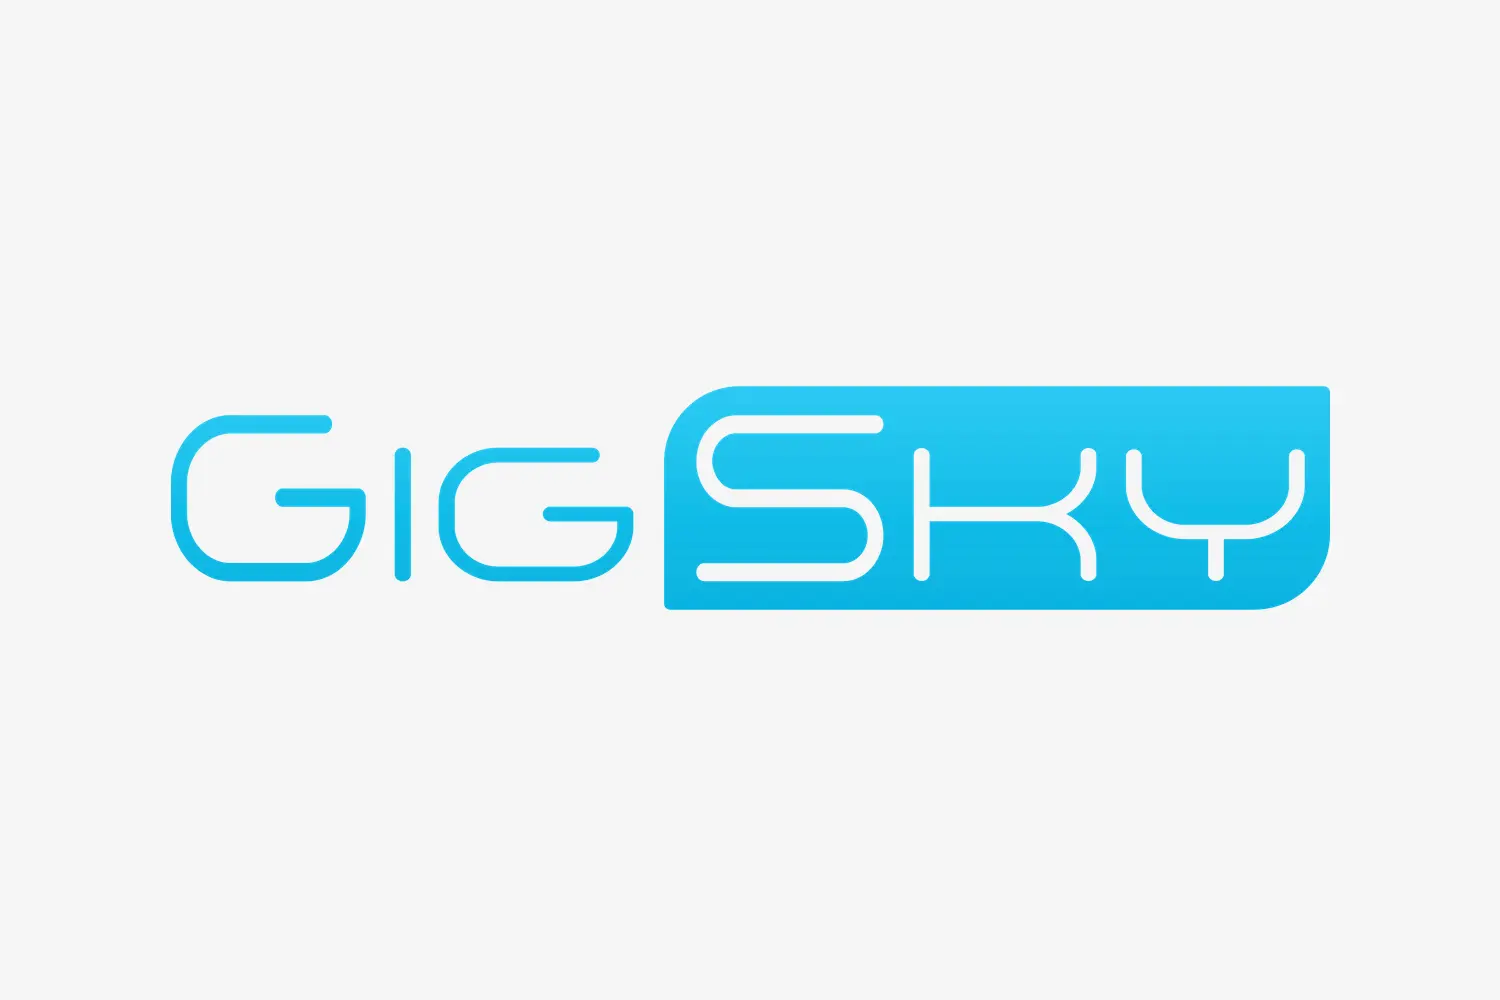 Gigsky logo banner